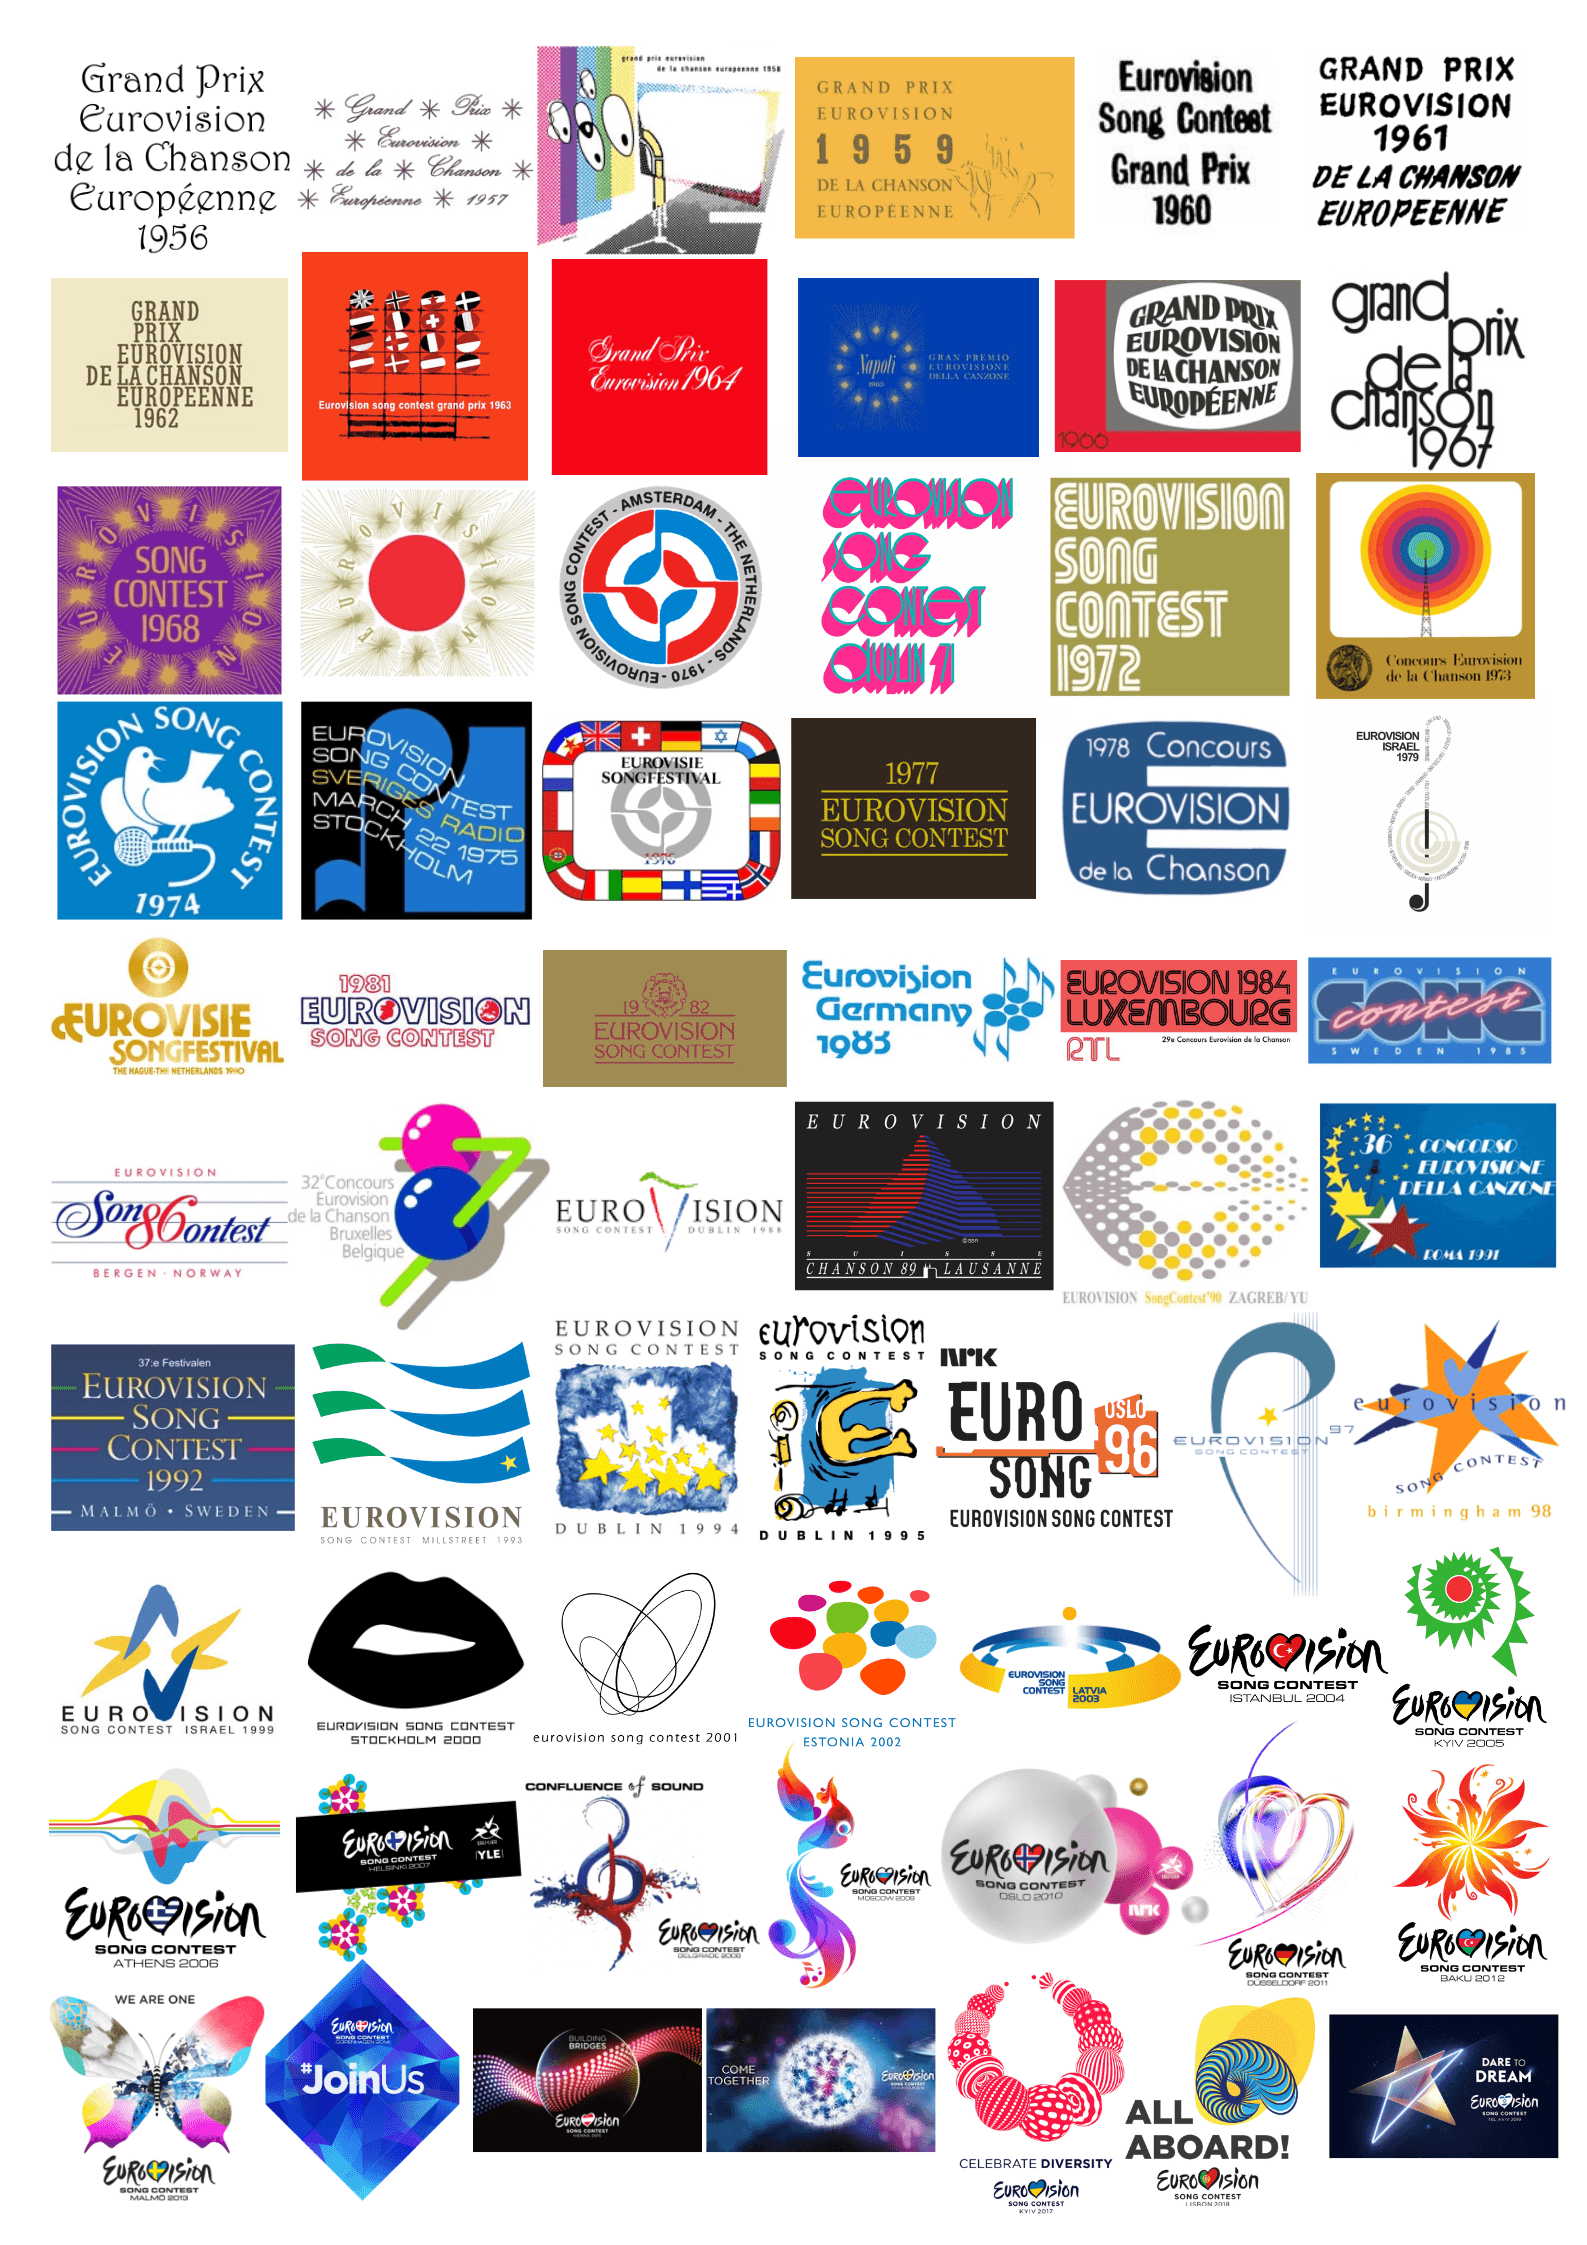 ESC Logo - All ESC logos 1956-2019 : eurovision